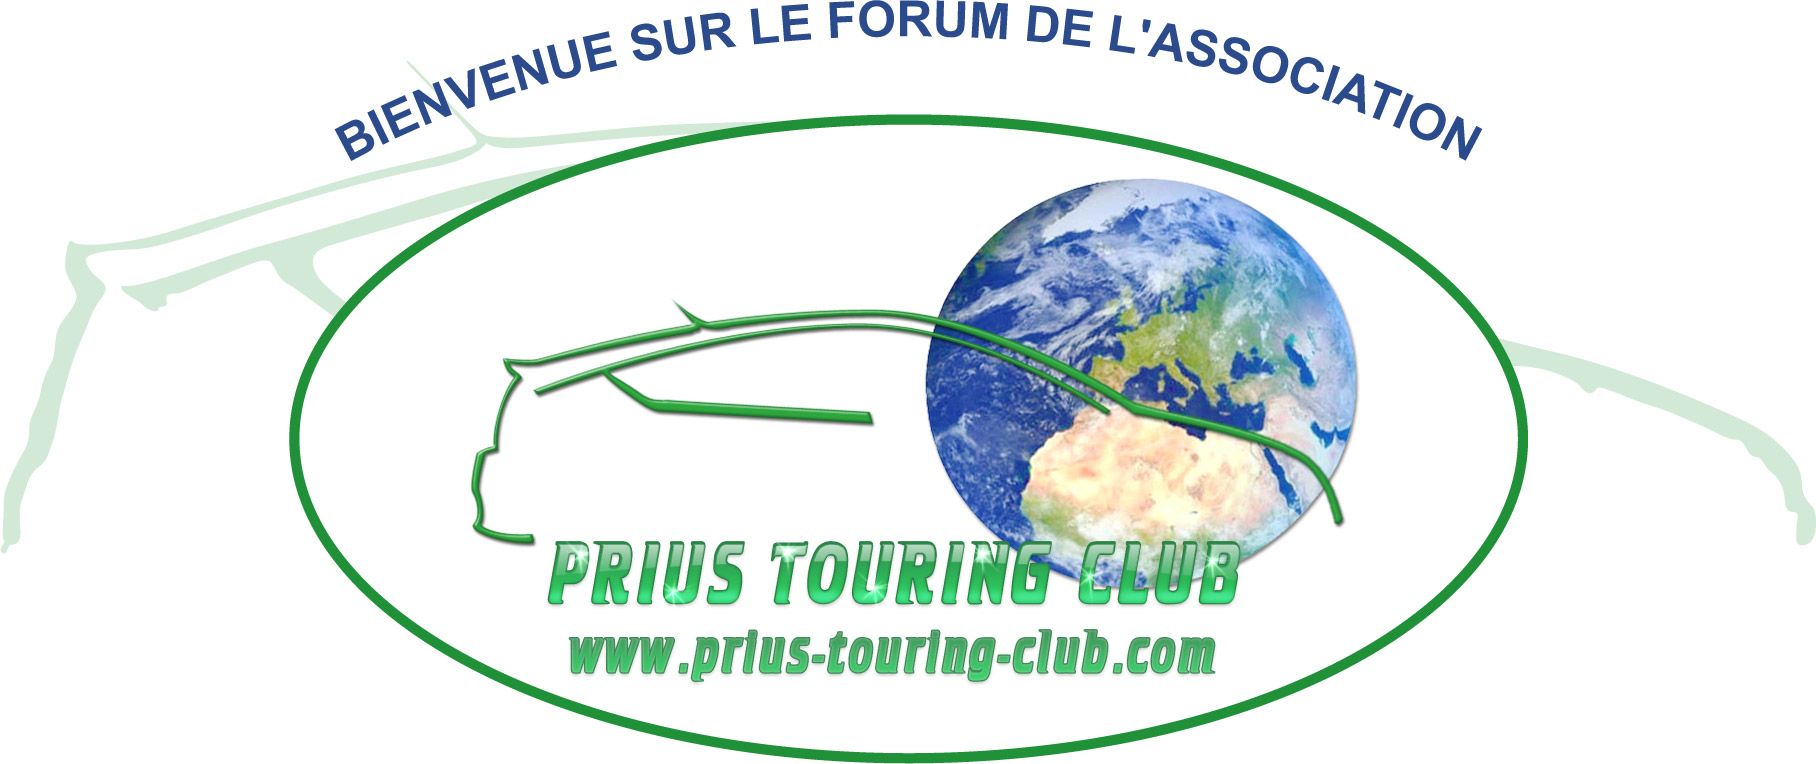 prius_touring_club_forum.jpg